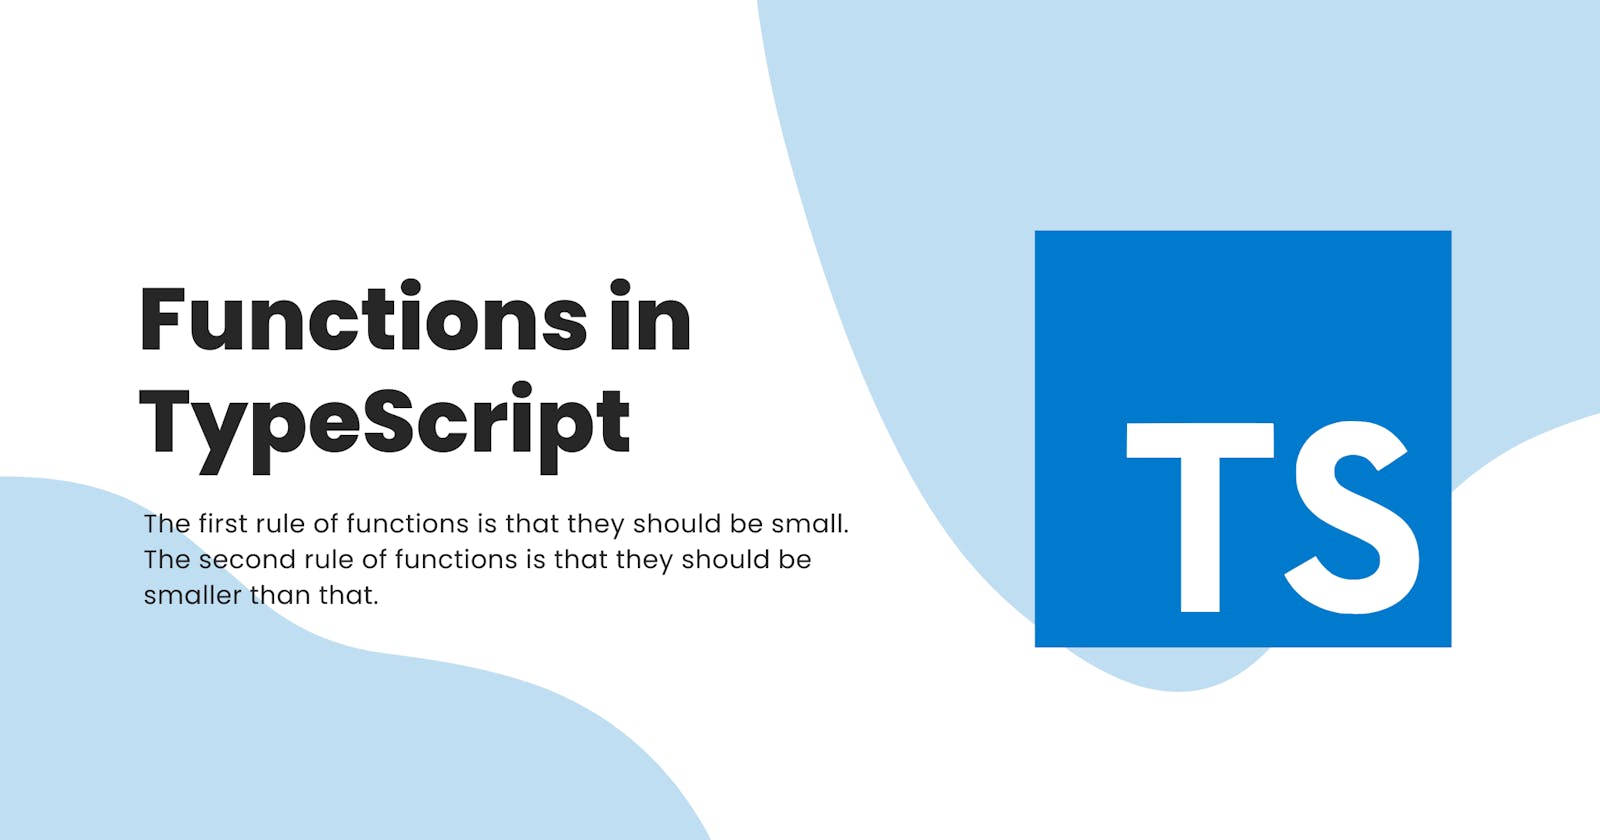 Functions in TypeScript